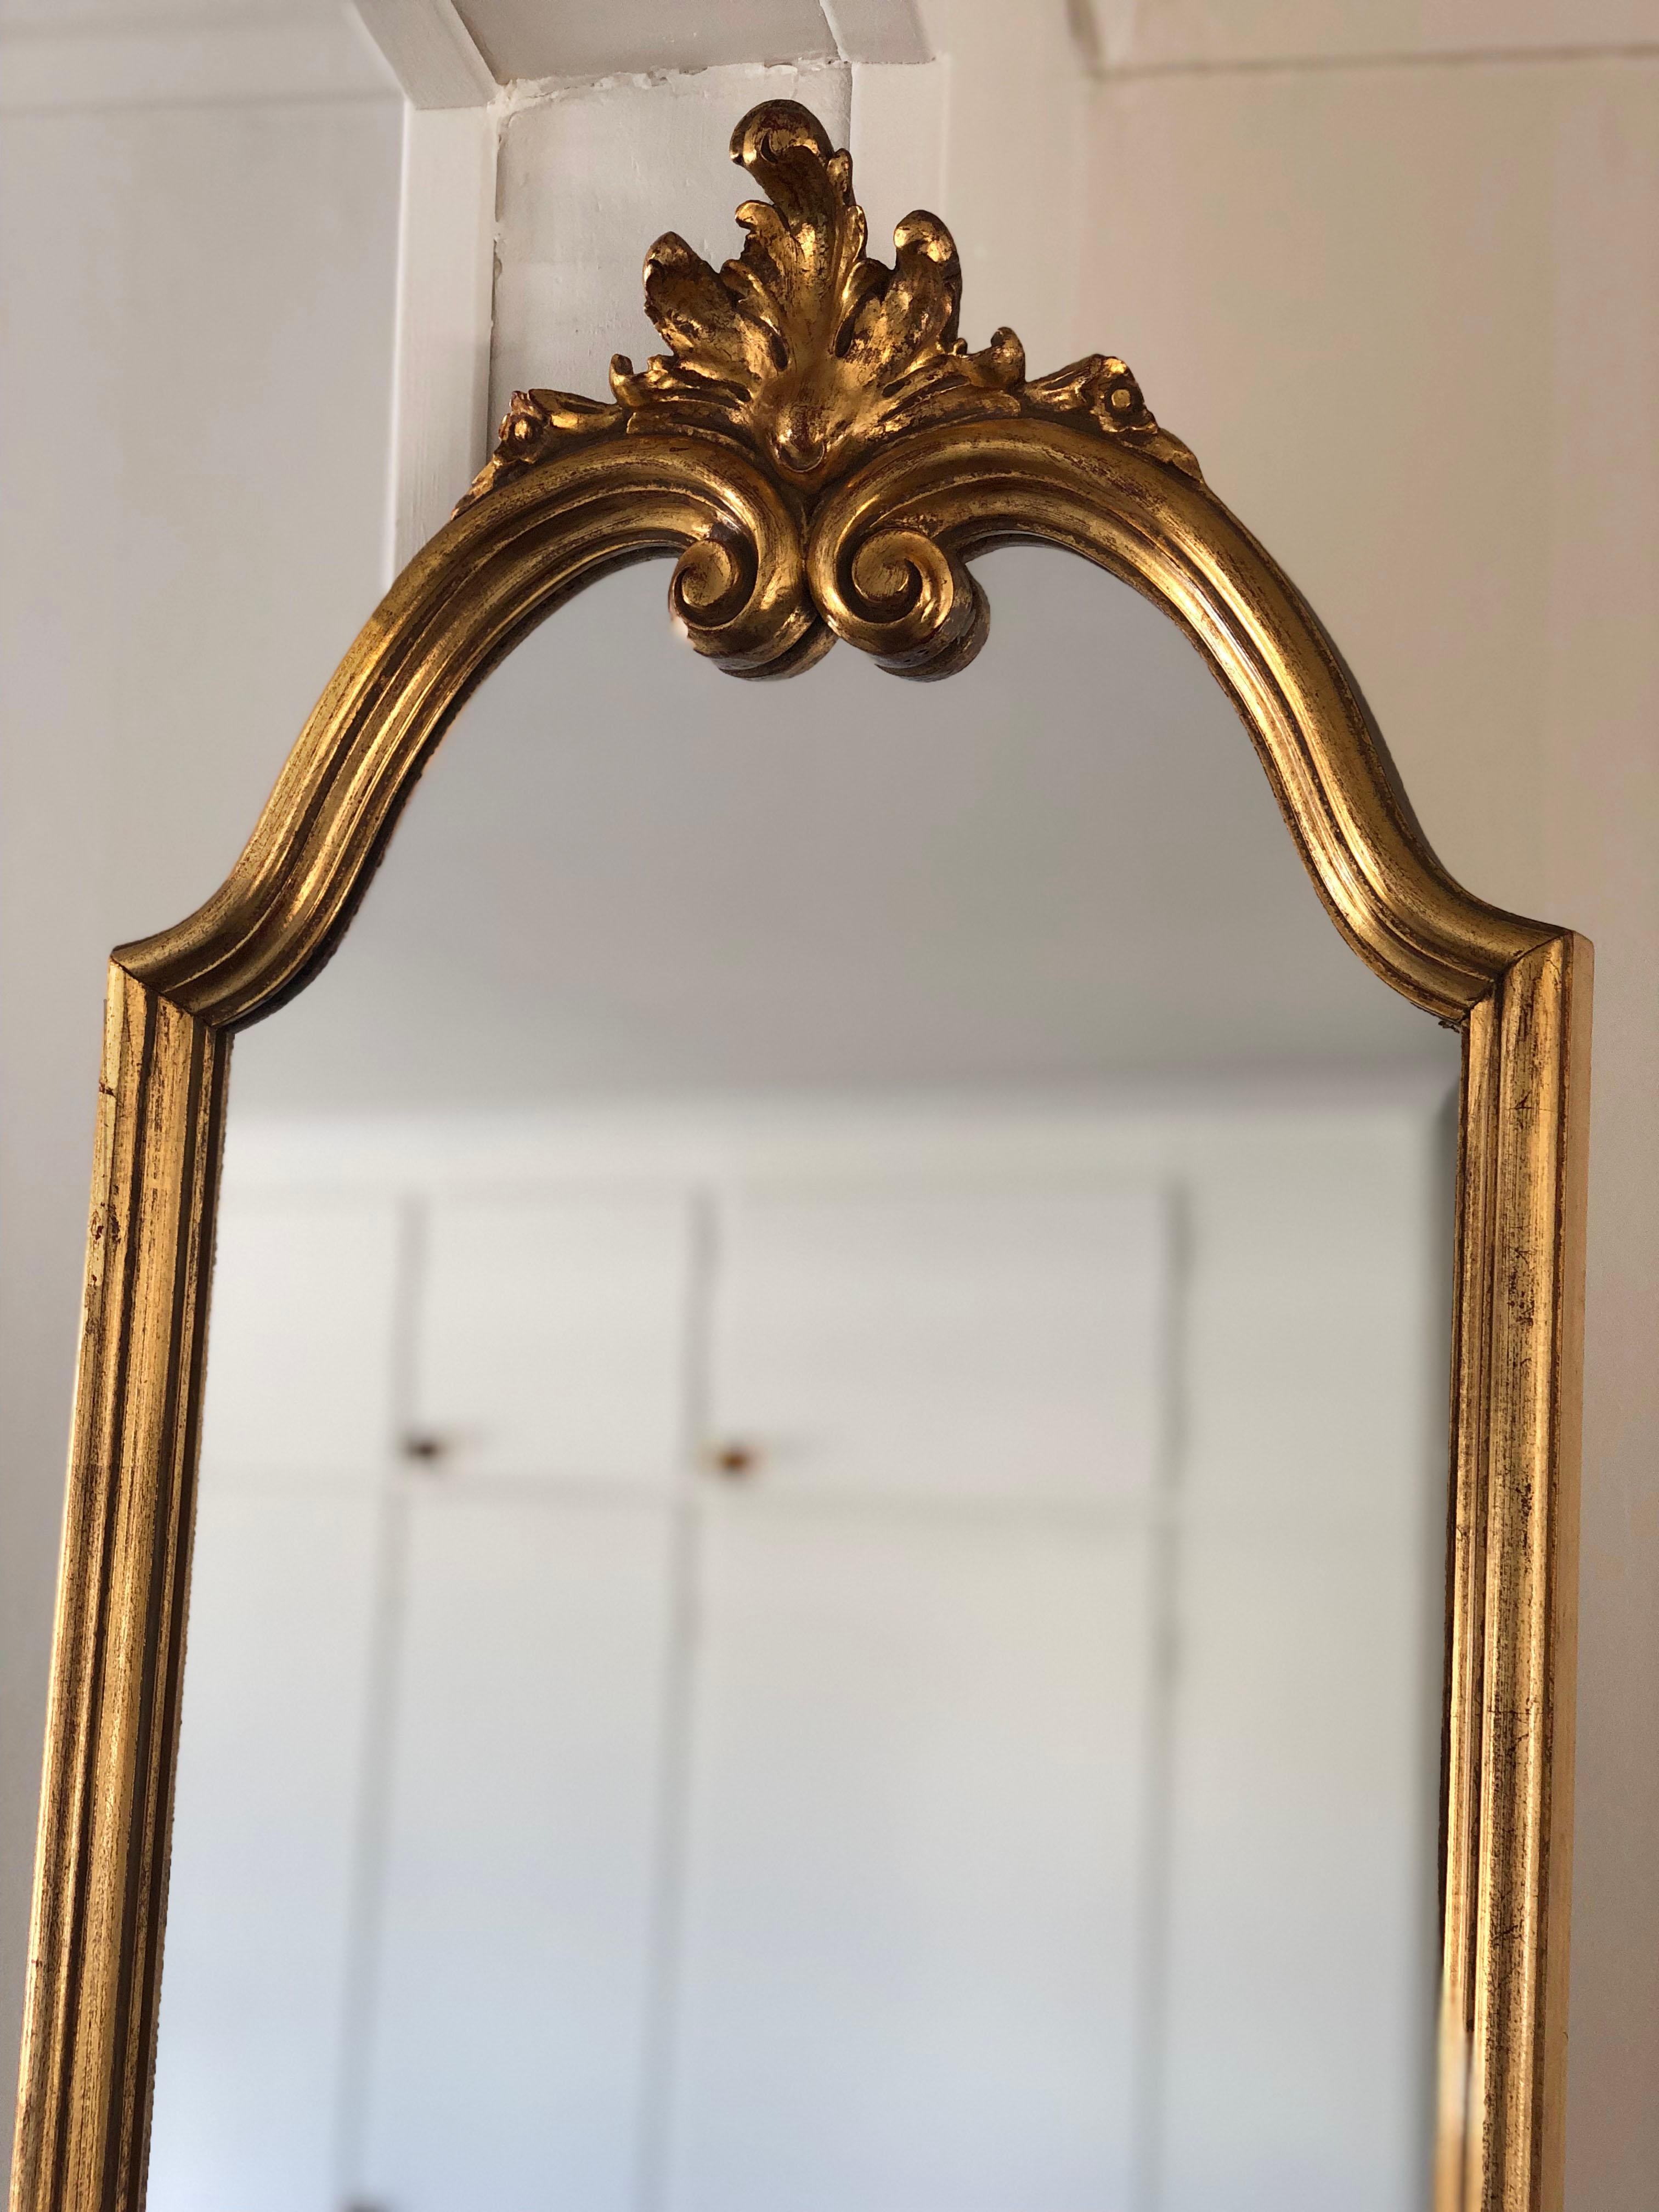 Schöner Vintage-Spiegel in voller Länge in Gold von Deknudt Spiegeln aus Belgien. In den goldenen Rahmen werden kleine geschliffene Spiegel eingesetzt. Deknudt ist bekannt für seine Qualitätsspiegel aus den 70er/80er Jahren.

Objekt: